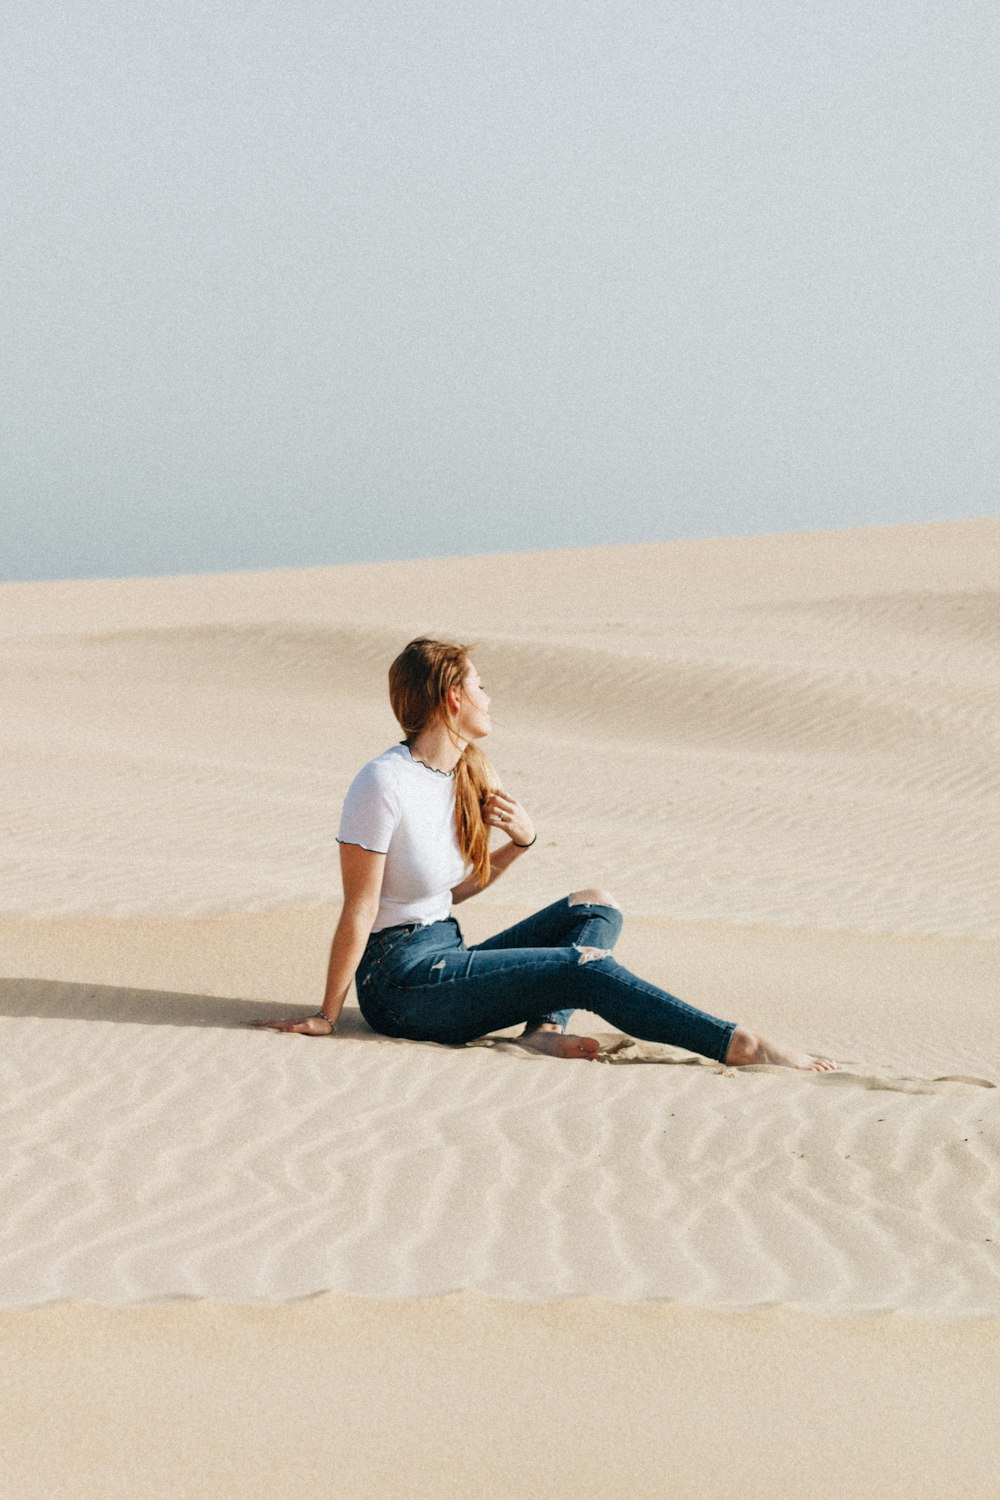 昼間の砂漠に座る女性